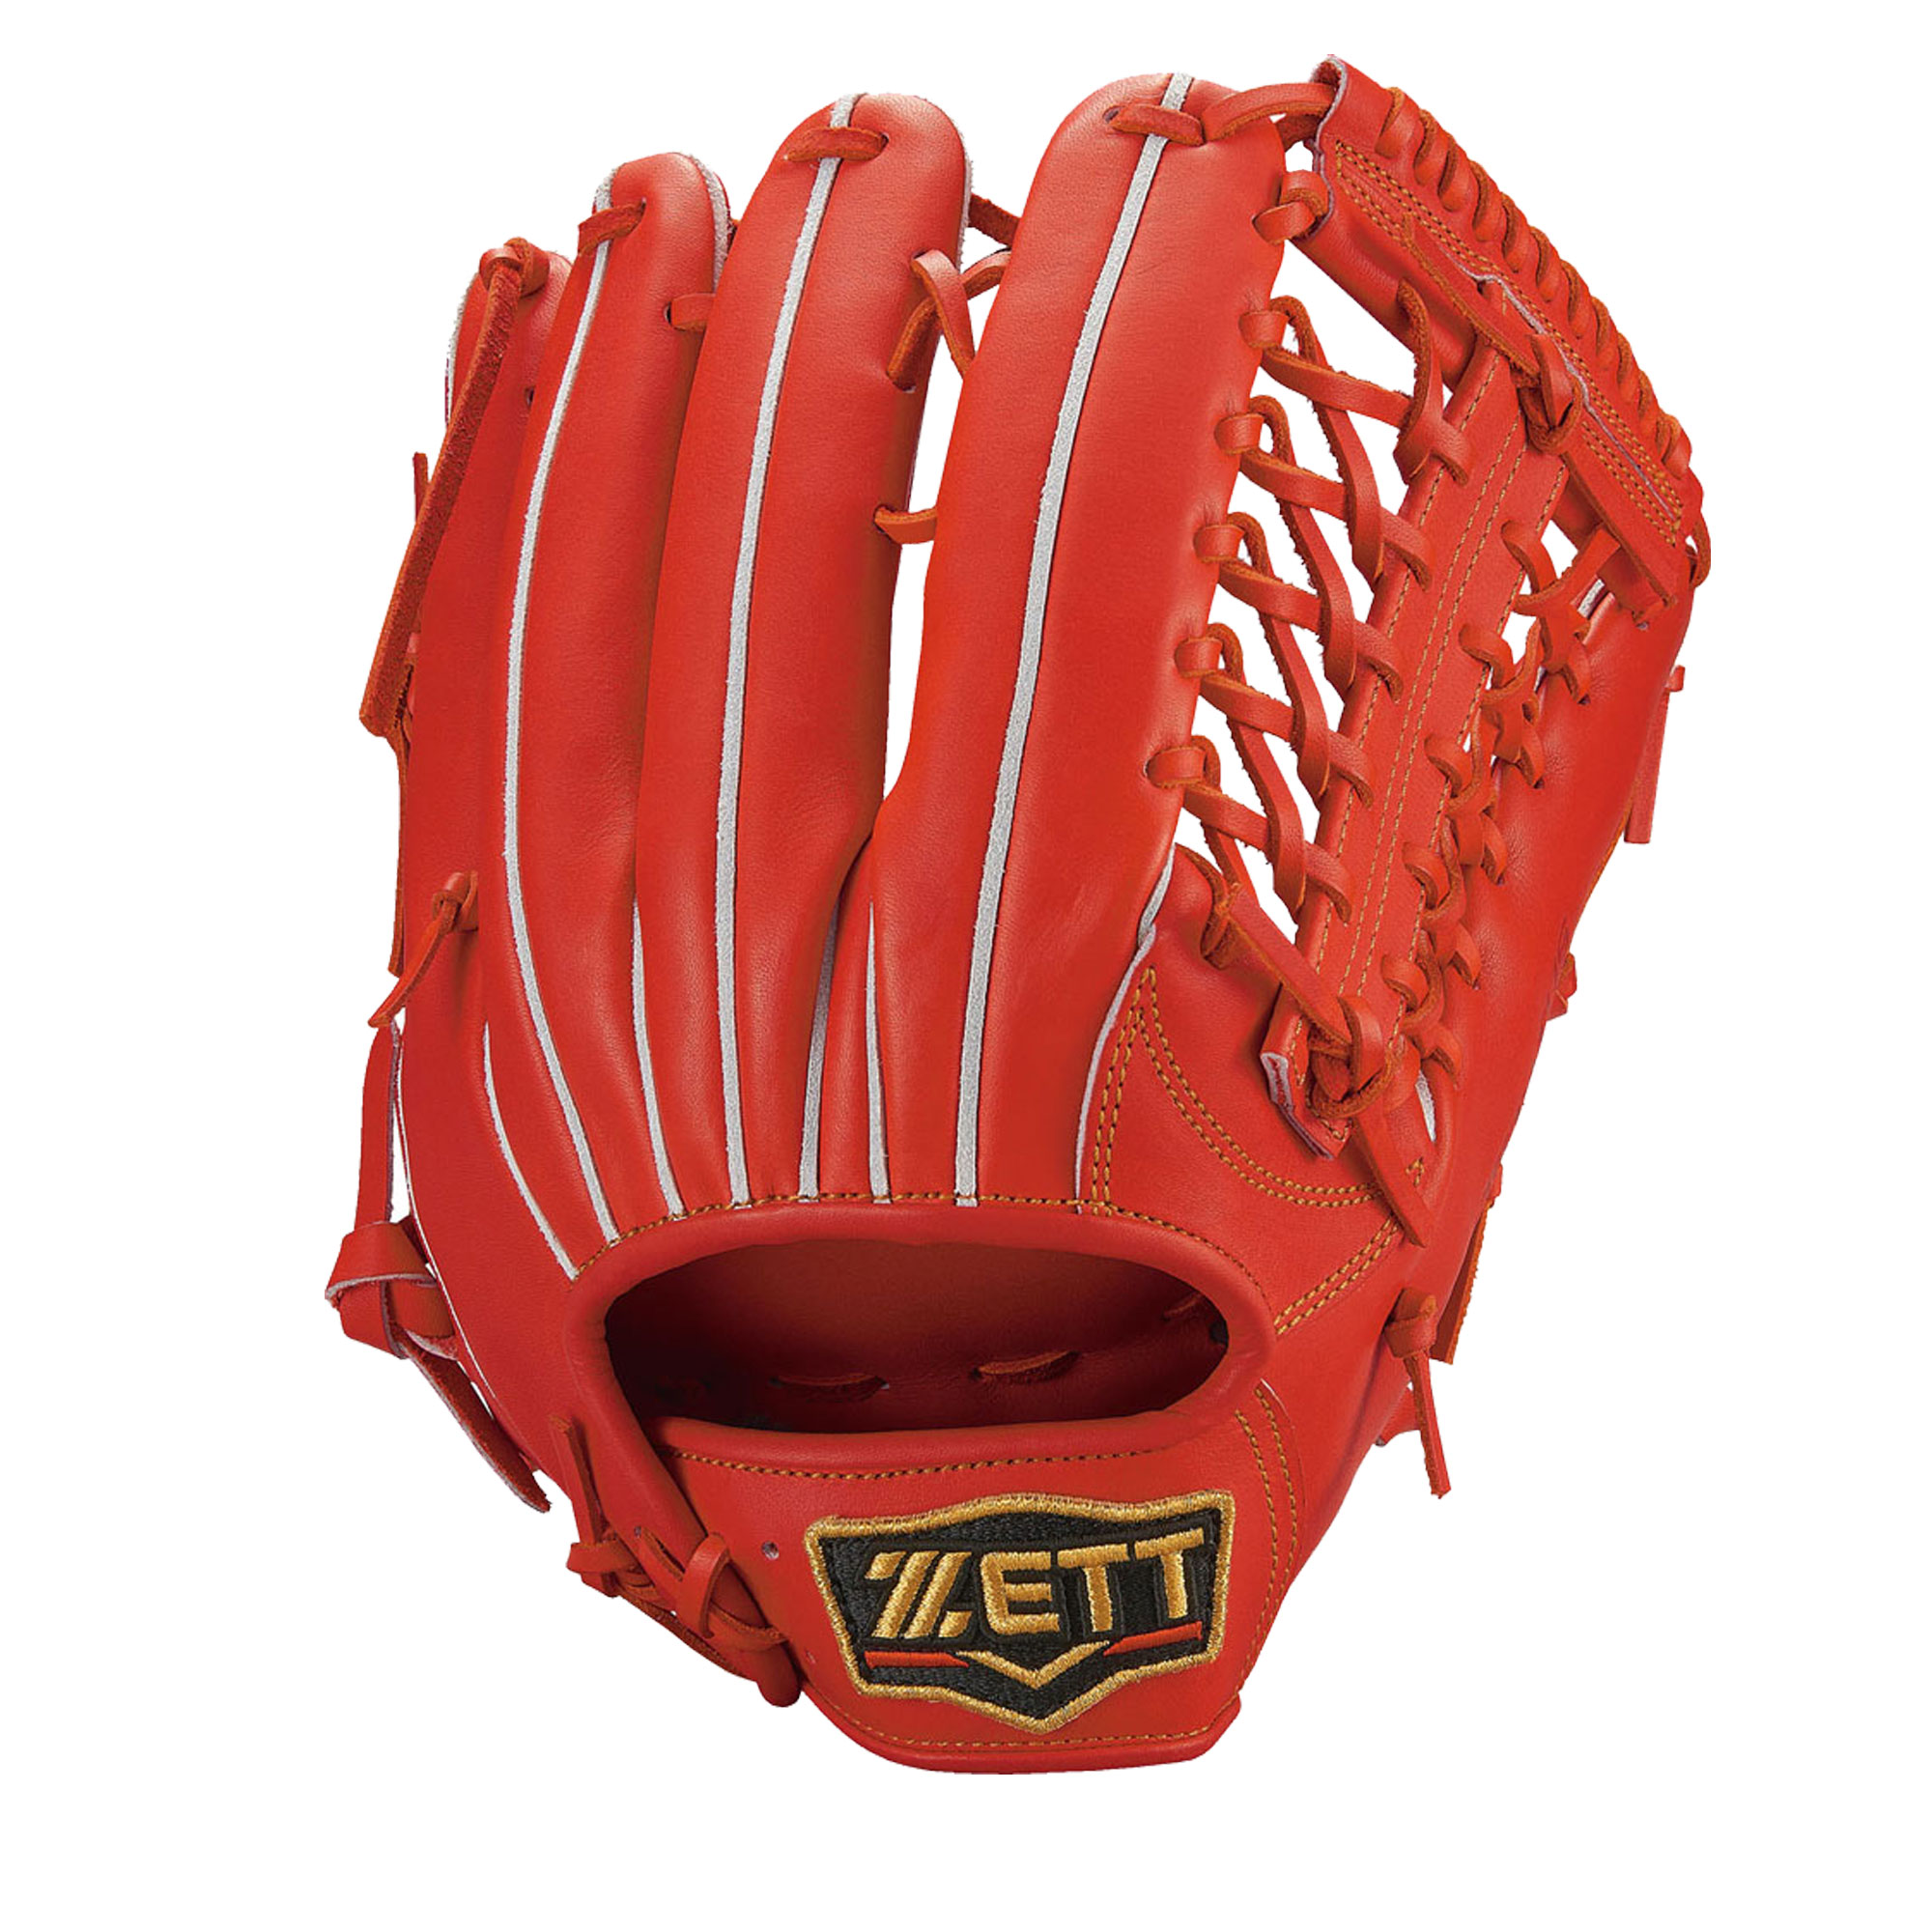 ゼット グラブ 大人 一般 ユニセックス ZETT BPROG678 オレンジ レッド 赤 野球 ベースボール グラブ グローブ 硬式 外野手 一般  大人 野球用品 スポーツ 部活